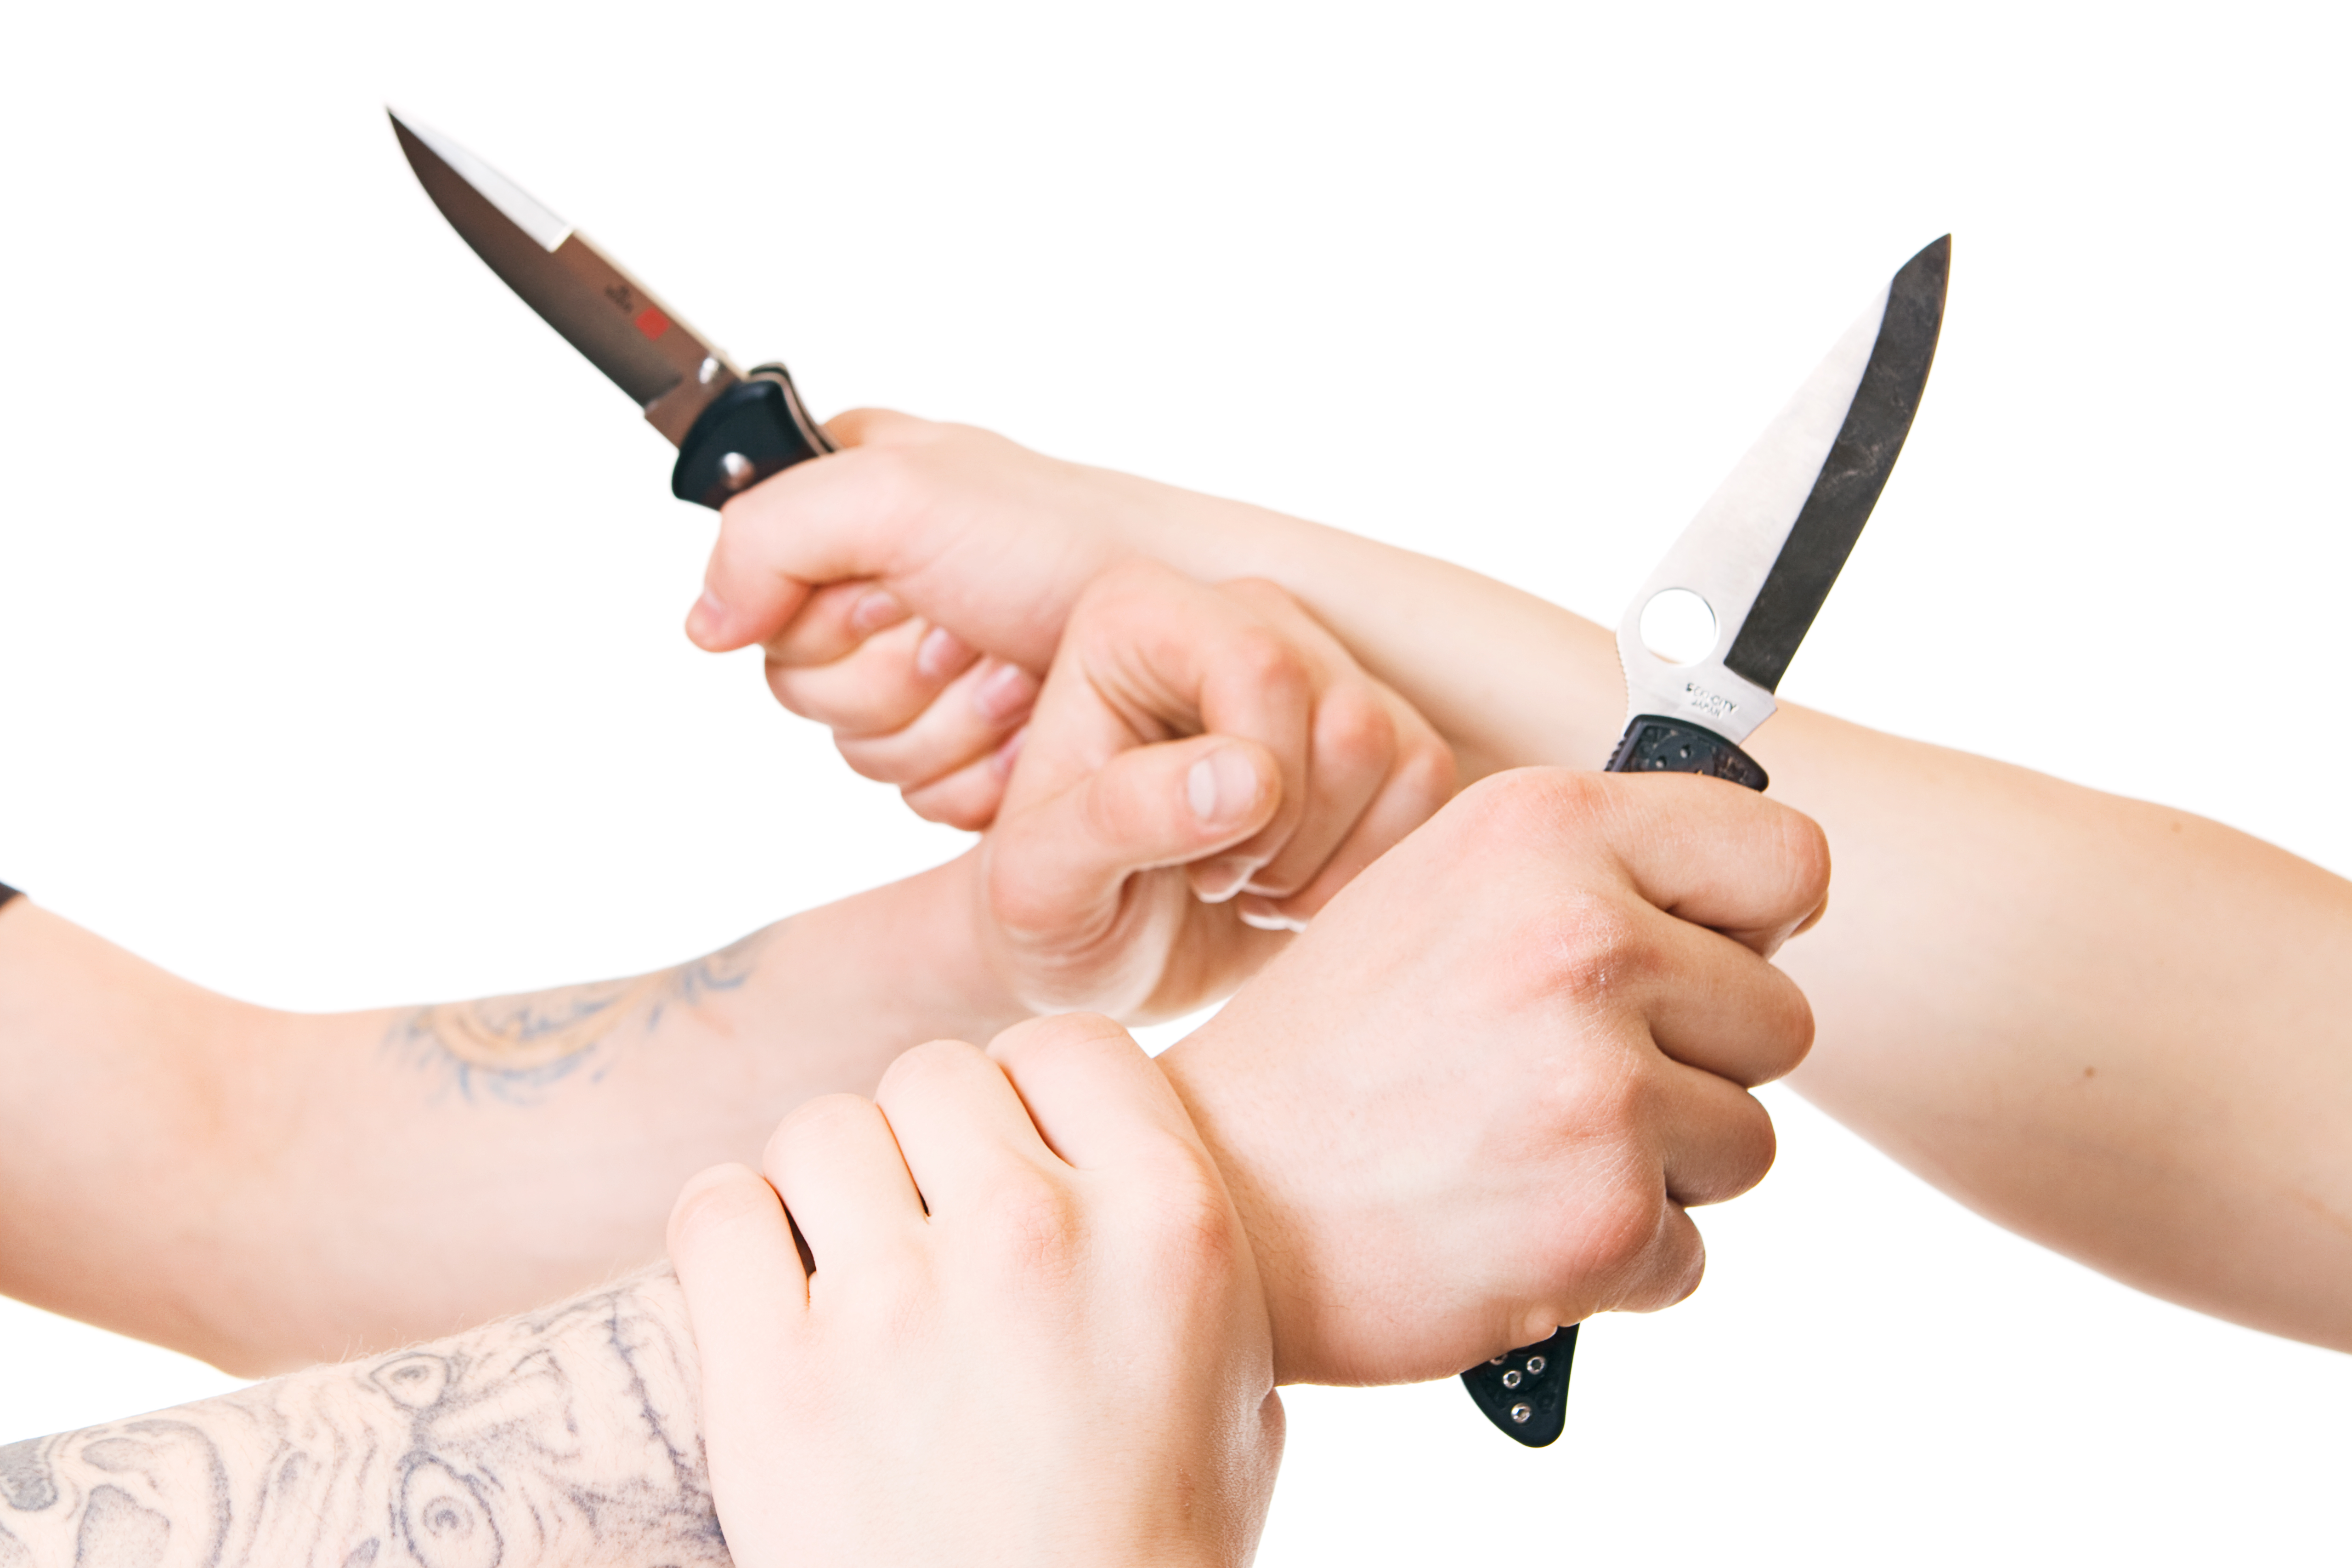 Knife fight photo